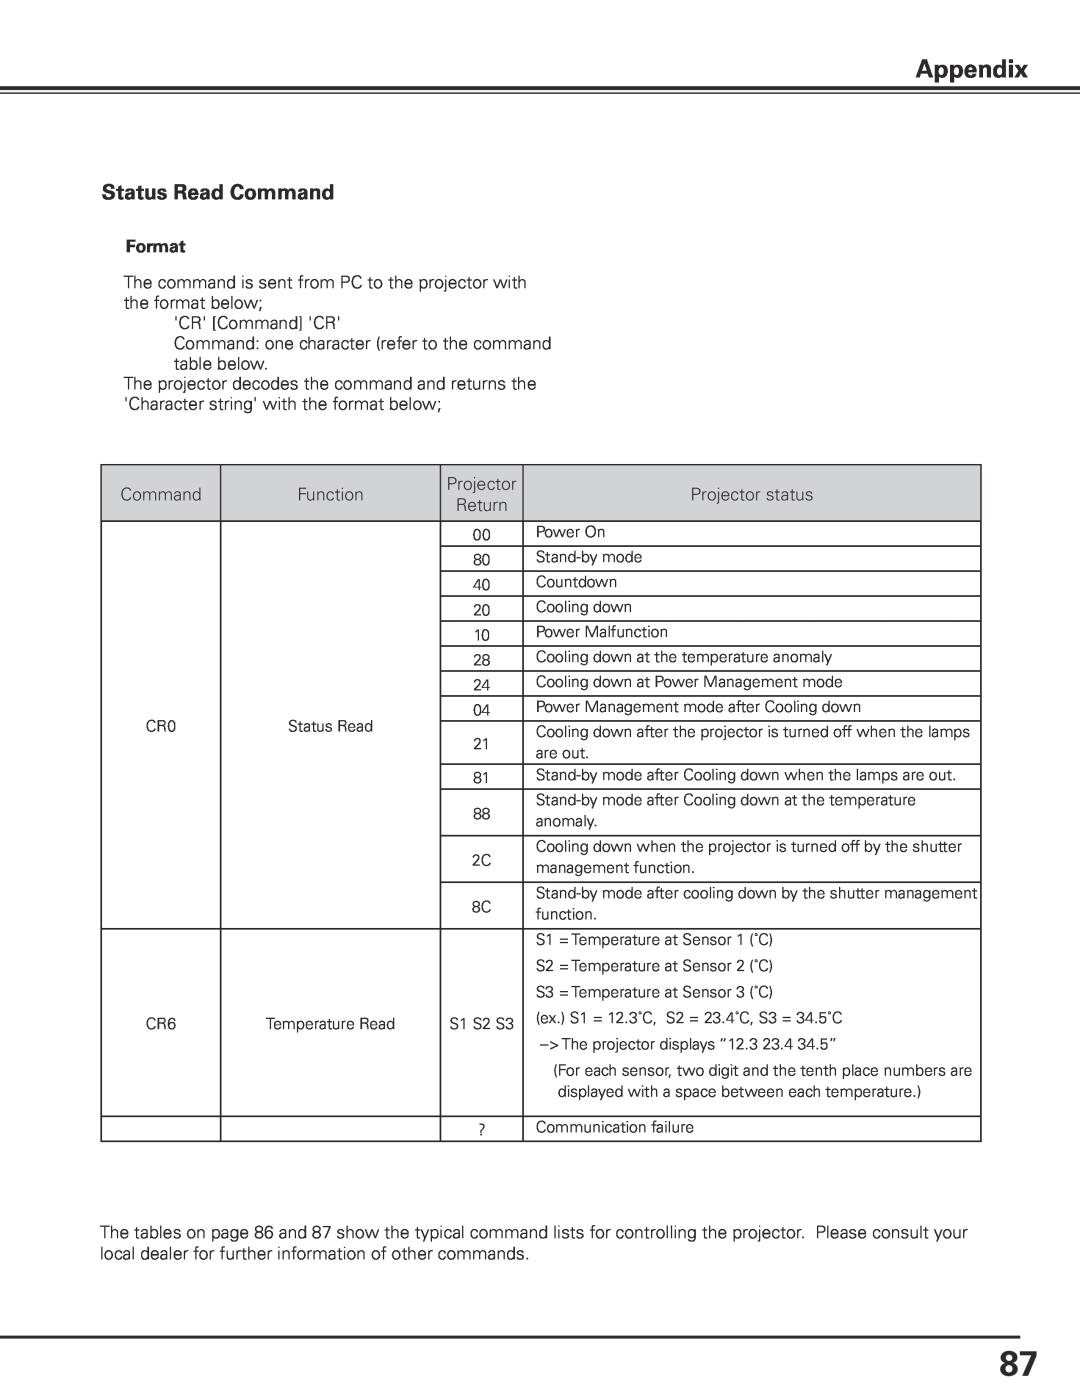 Sanyo PLC-XP200L owner manual Appendix, Status Read Command 